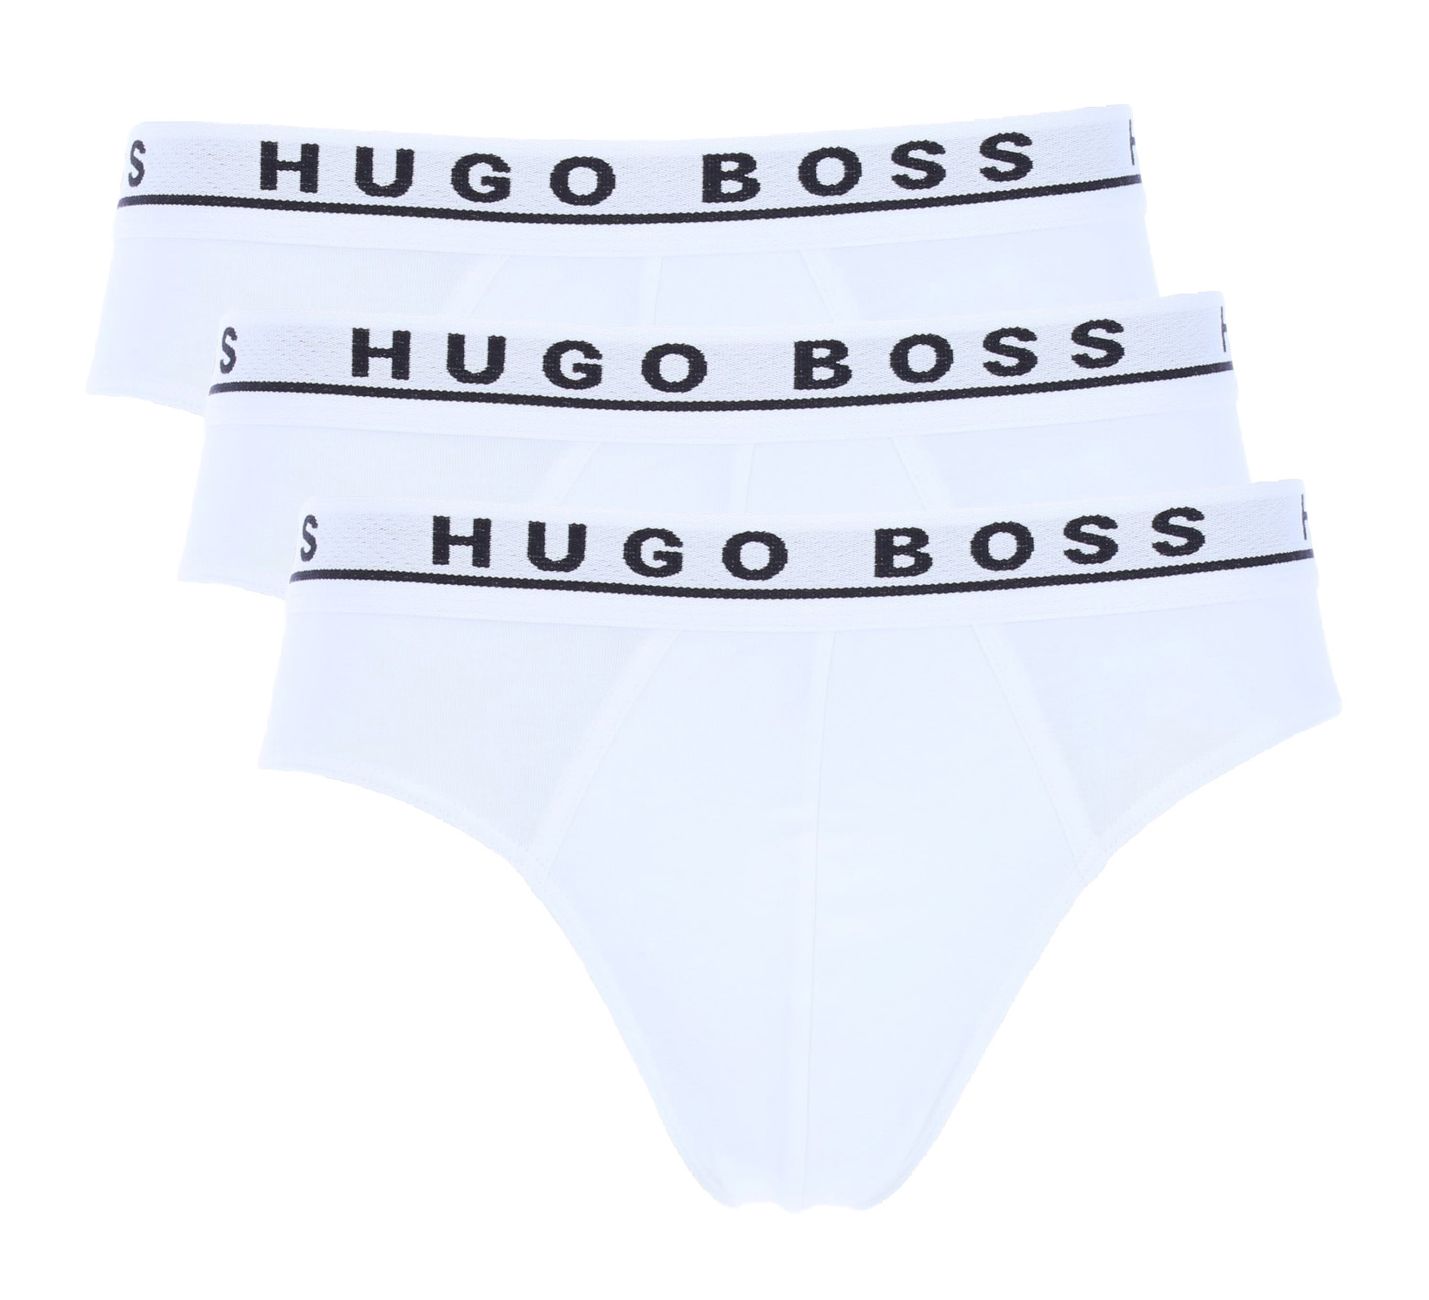 Hugo Boss Herren Slips 3er Pack Mini Brief - Hugo Boss - SAGATOO - 4021419122455